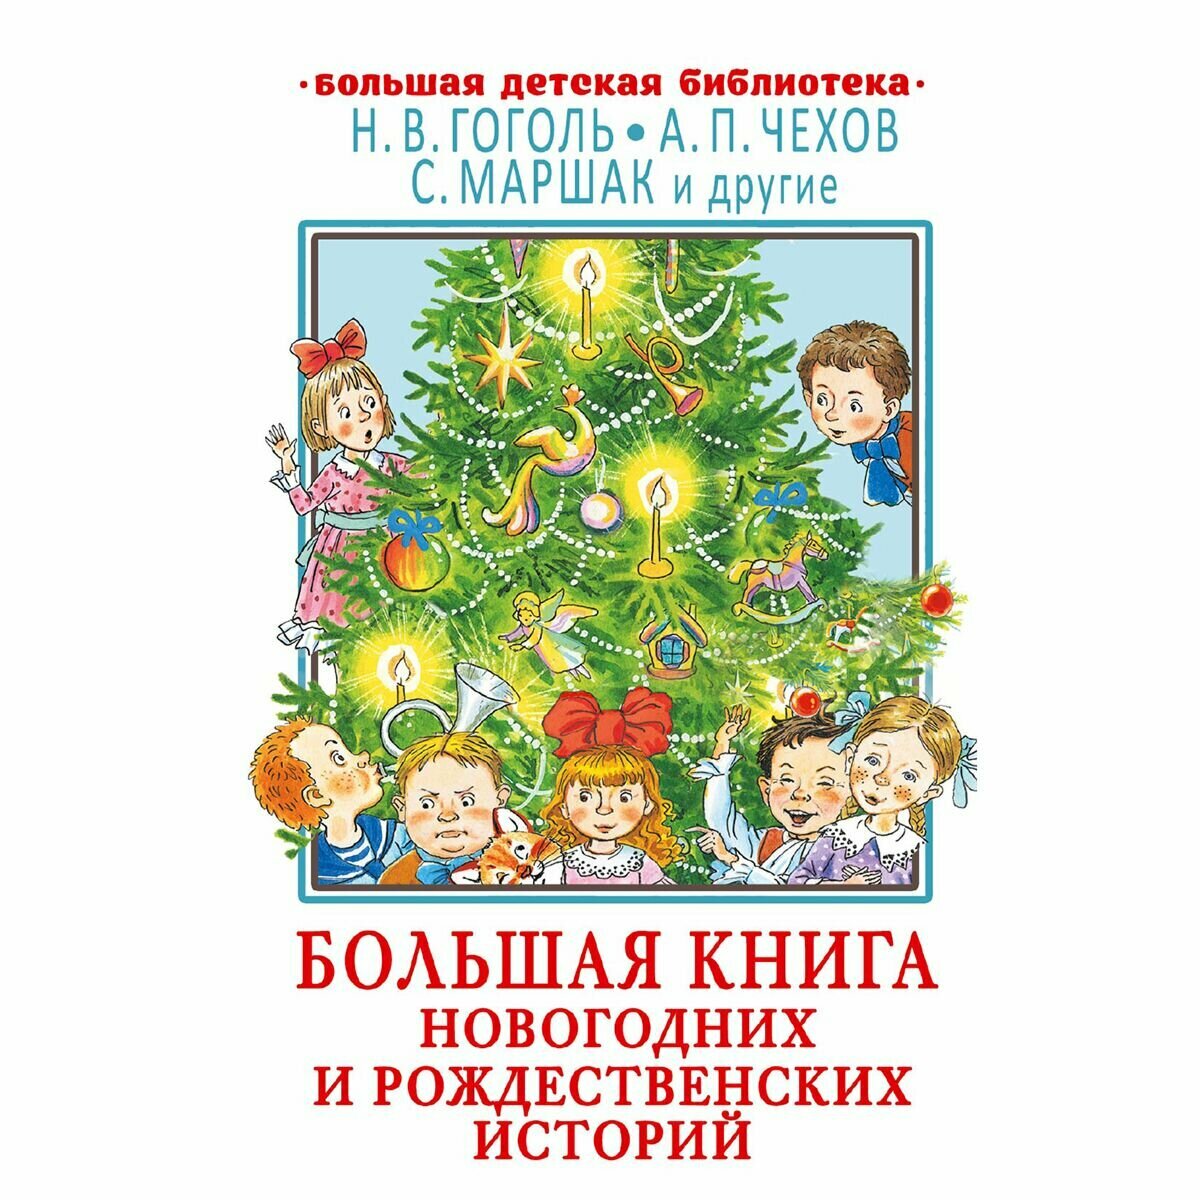 Большая книга новогодних и рождественских историй - фото №15